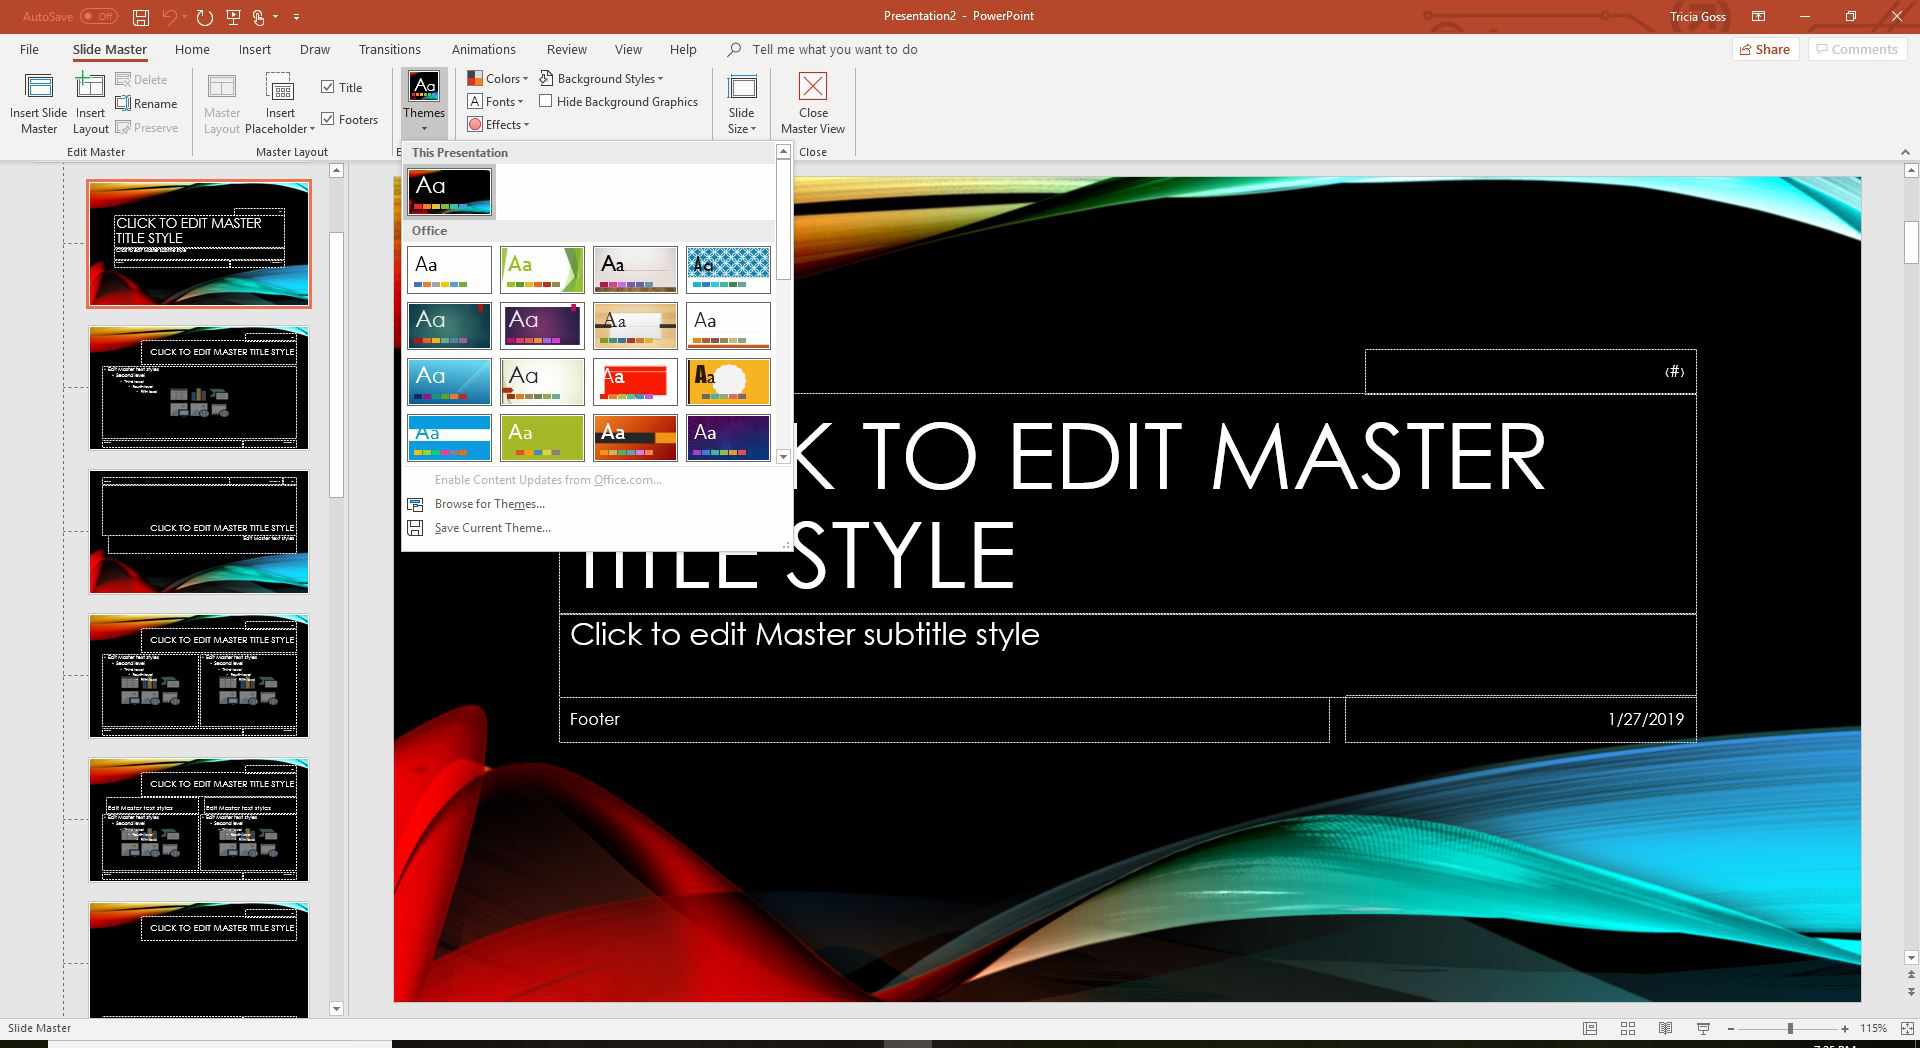 Skärmdump av teman på fliken Slide Master